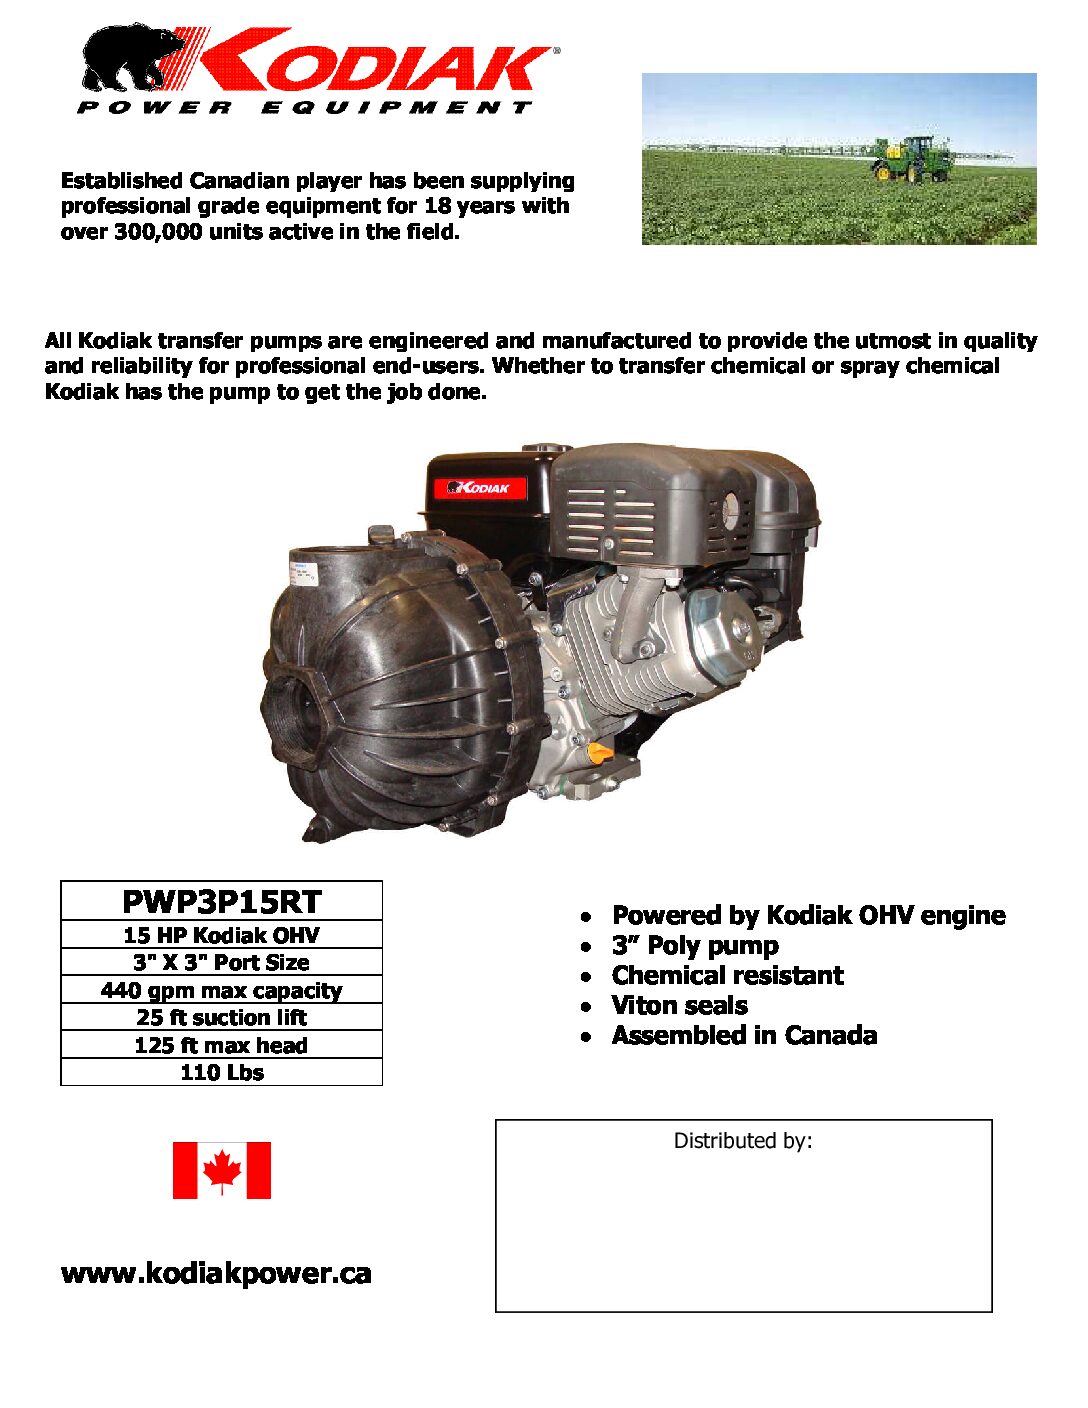 Kodiak PWP3P15RT Water Pumps Product Sheet